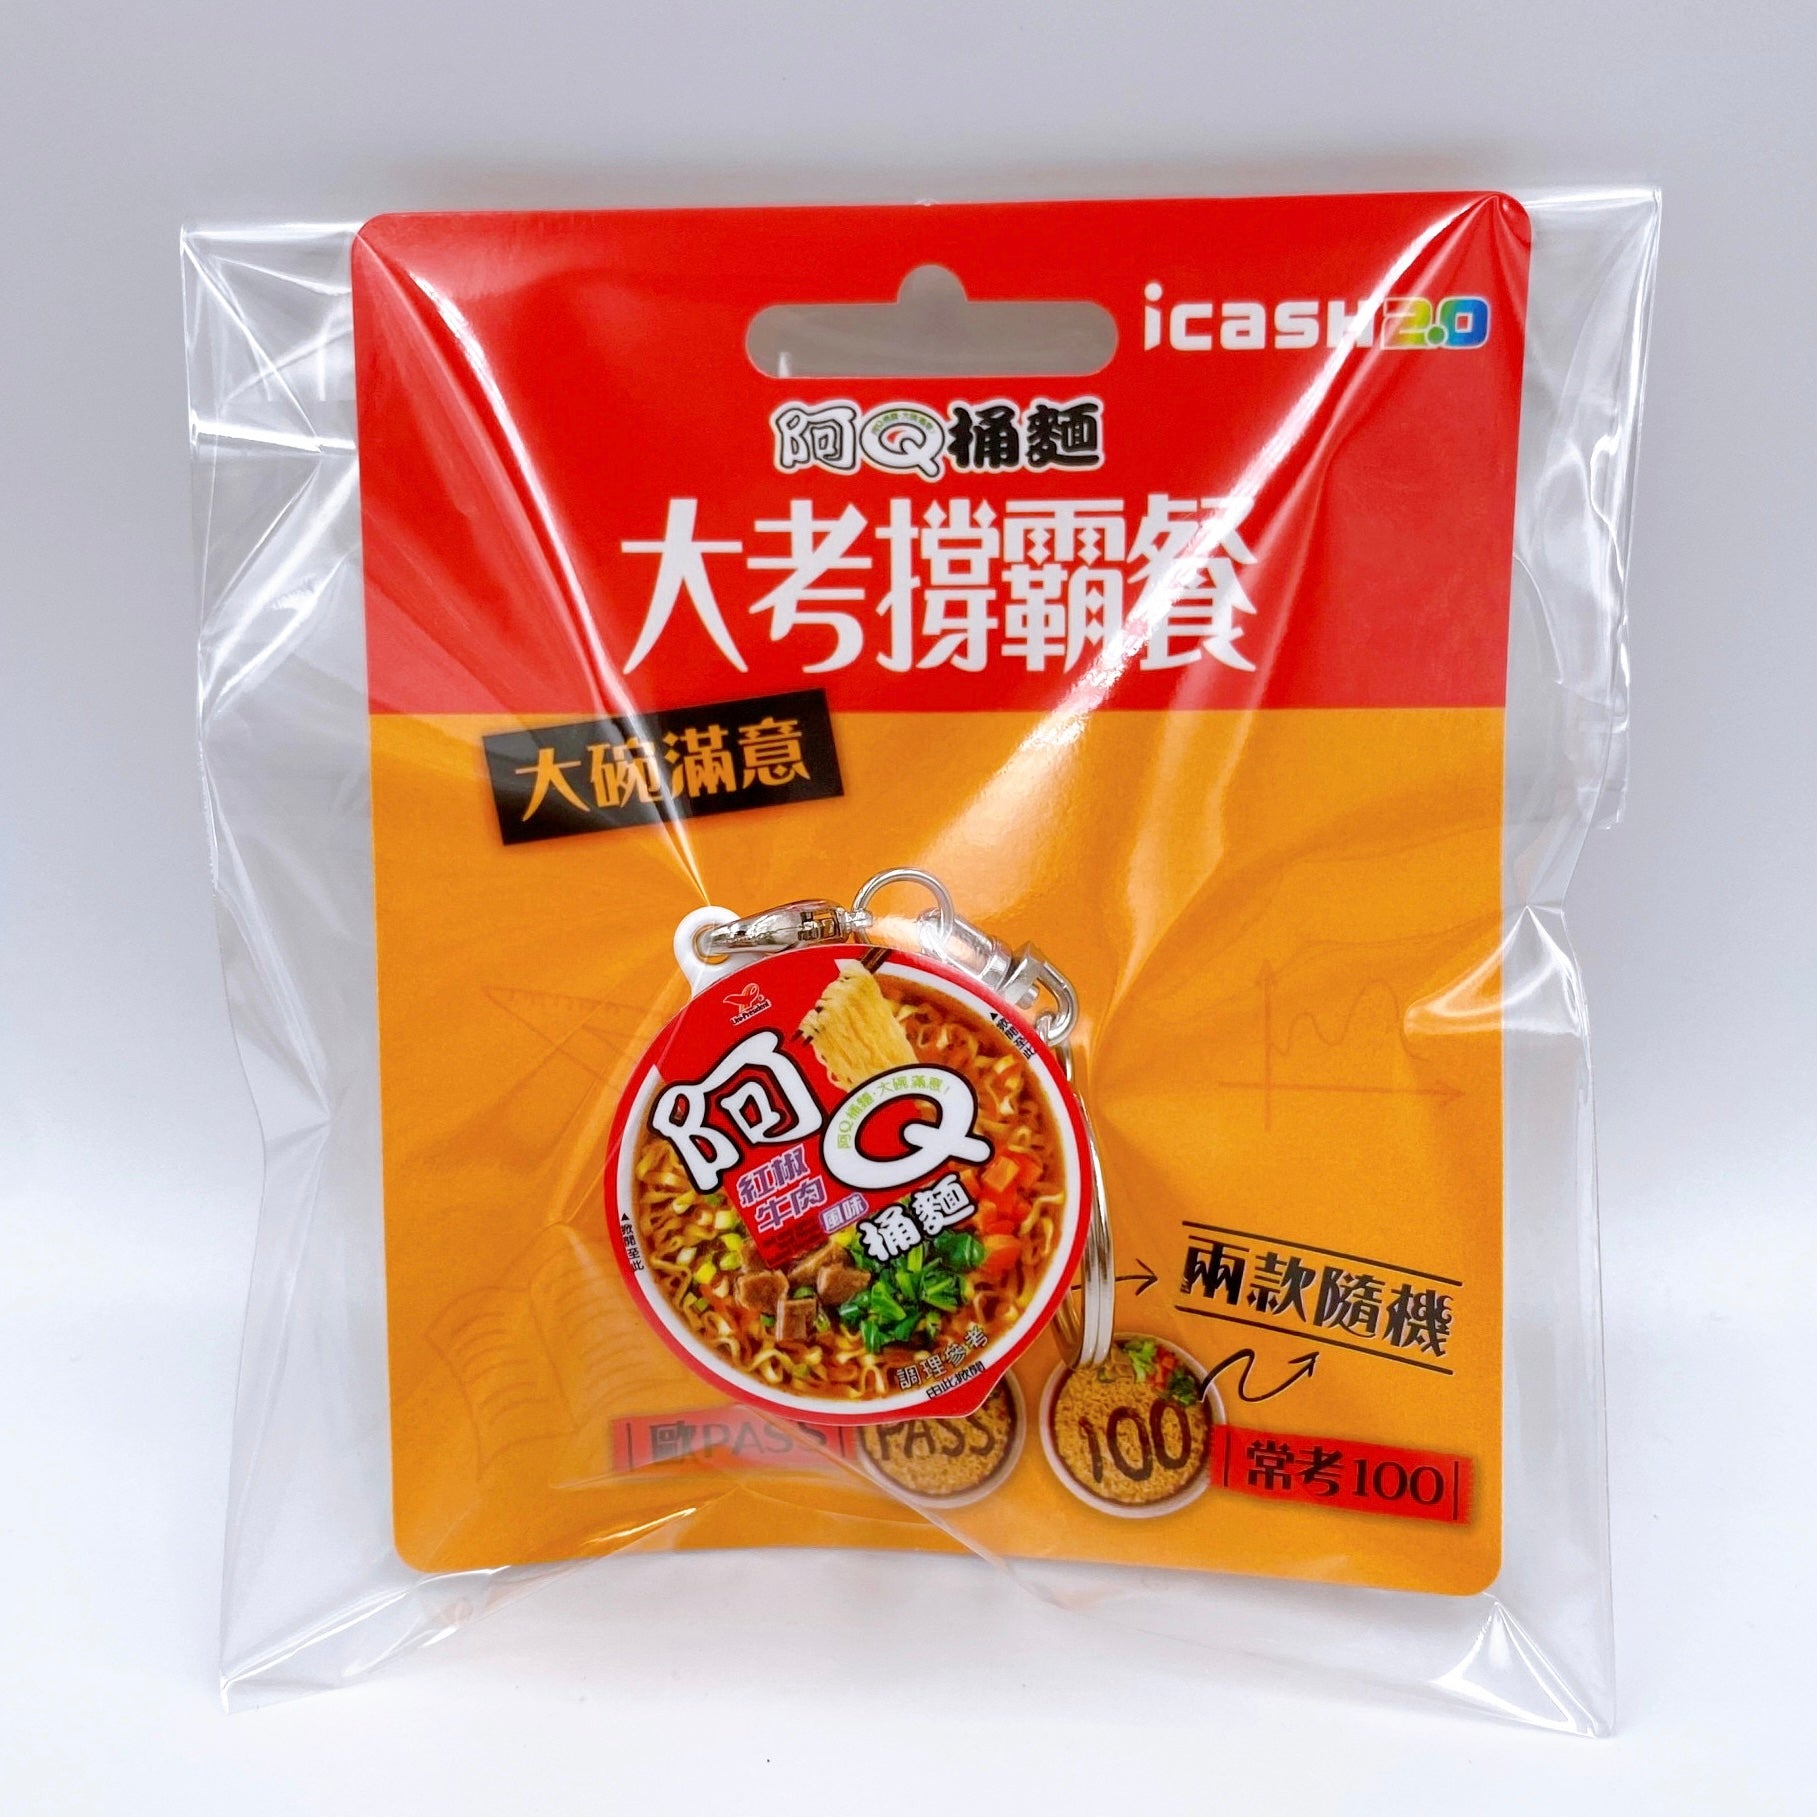 数量限定 レア台湾交通系ICカード カップ麺 阿Q桶麺 icash2.0｜阿Q桶麵 紅椒牛肉風味 icash2.0